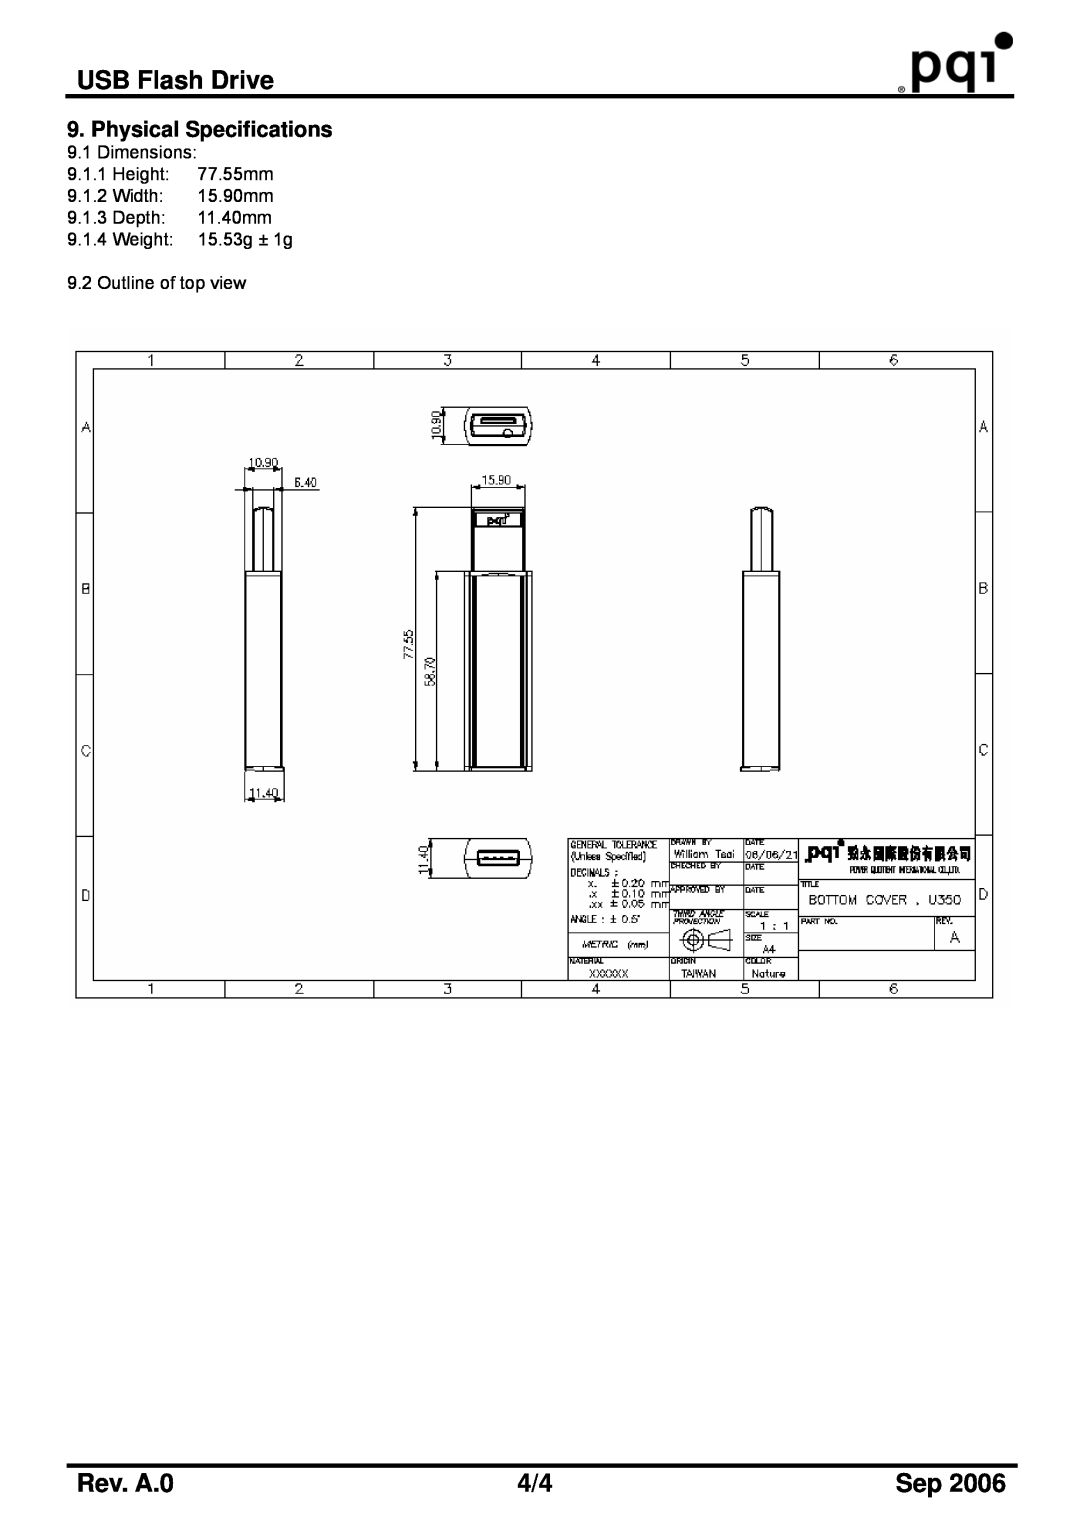 PQI U350 manual USB Flash Drive, Rev. A.0, Dimensions 9.1.1 Height 77.55mm 9.1.2 Width 15.90mm 